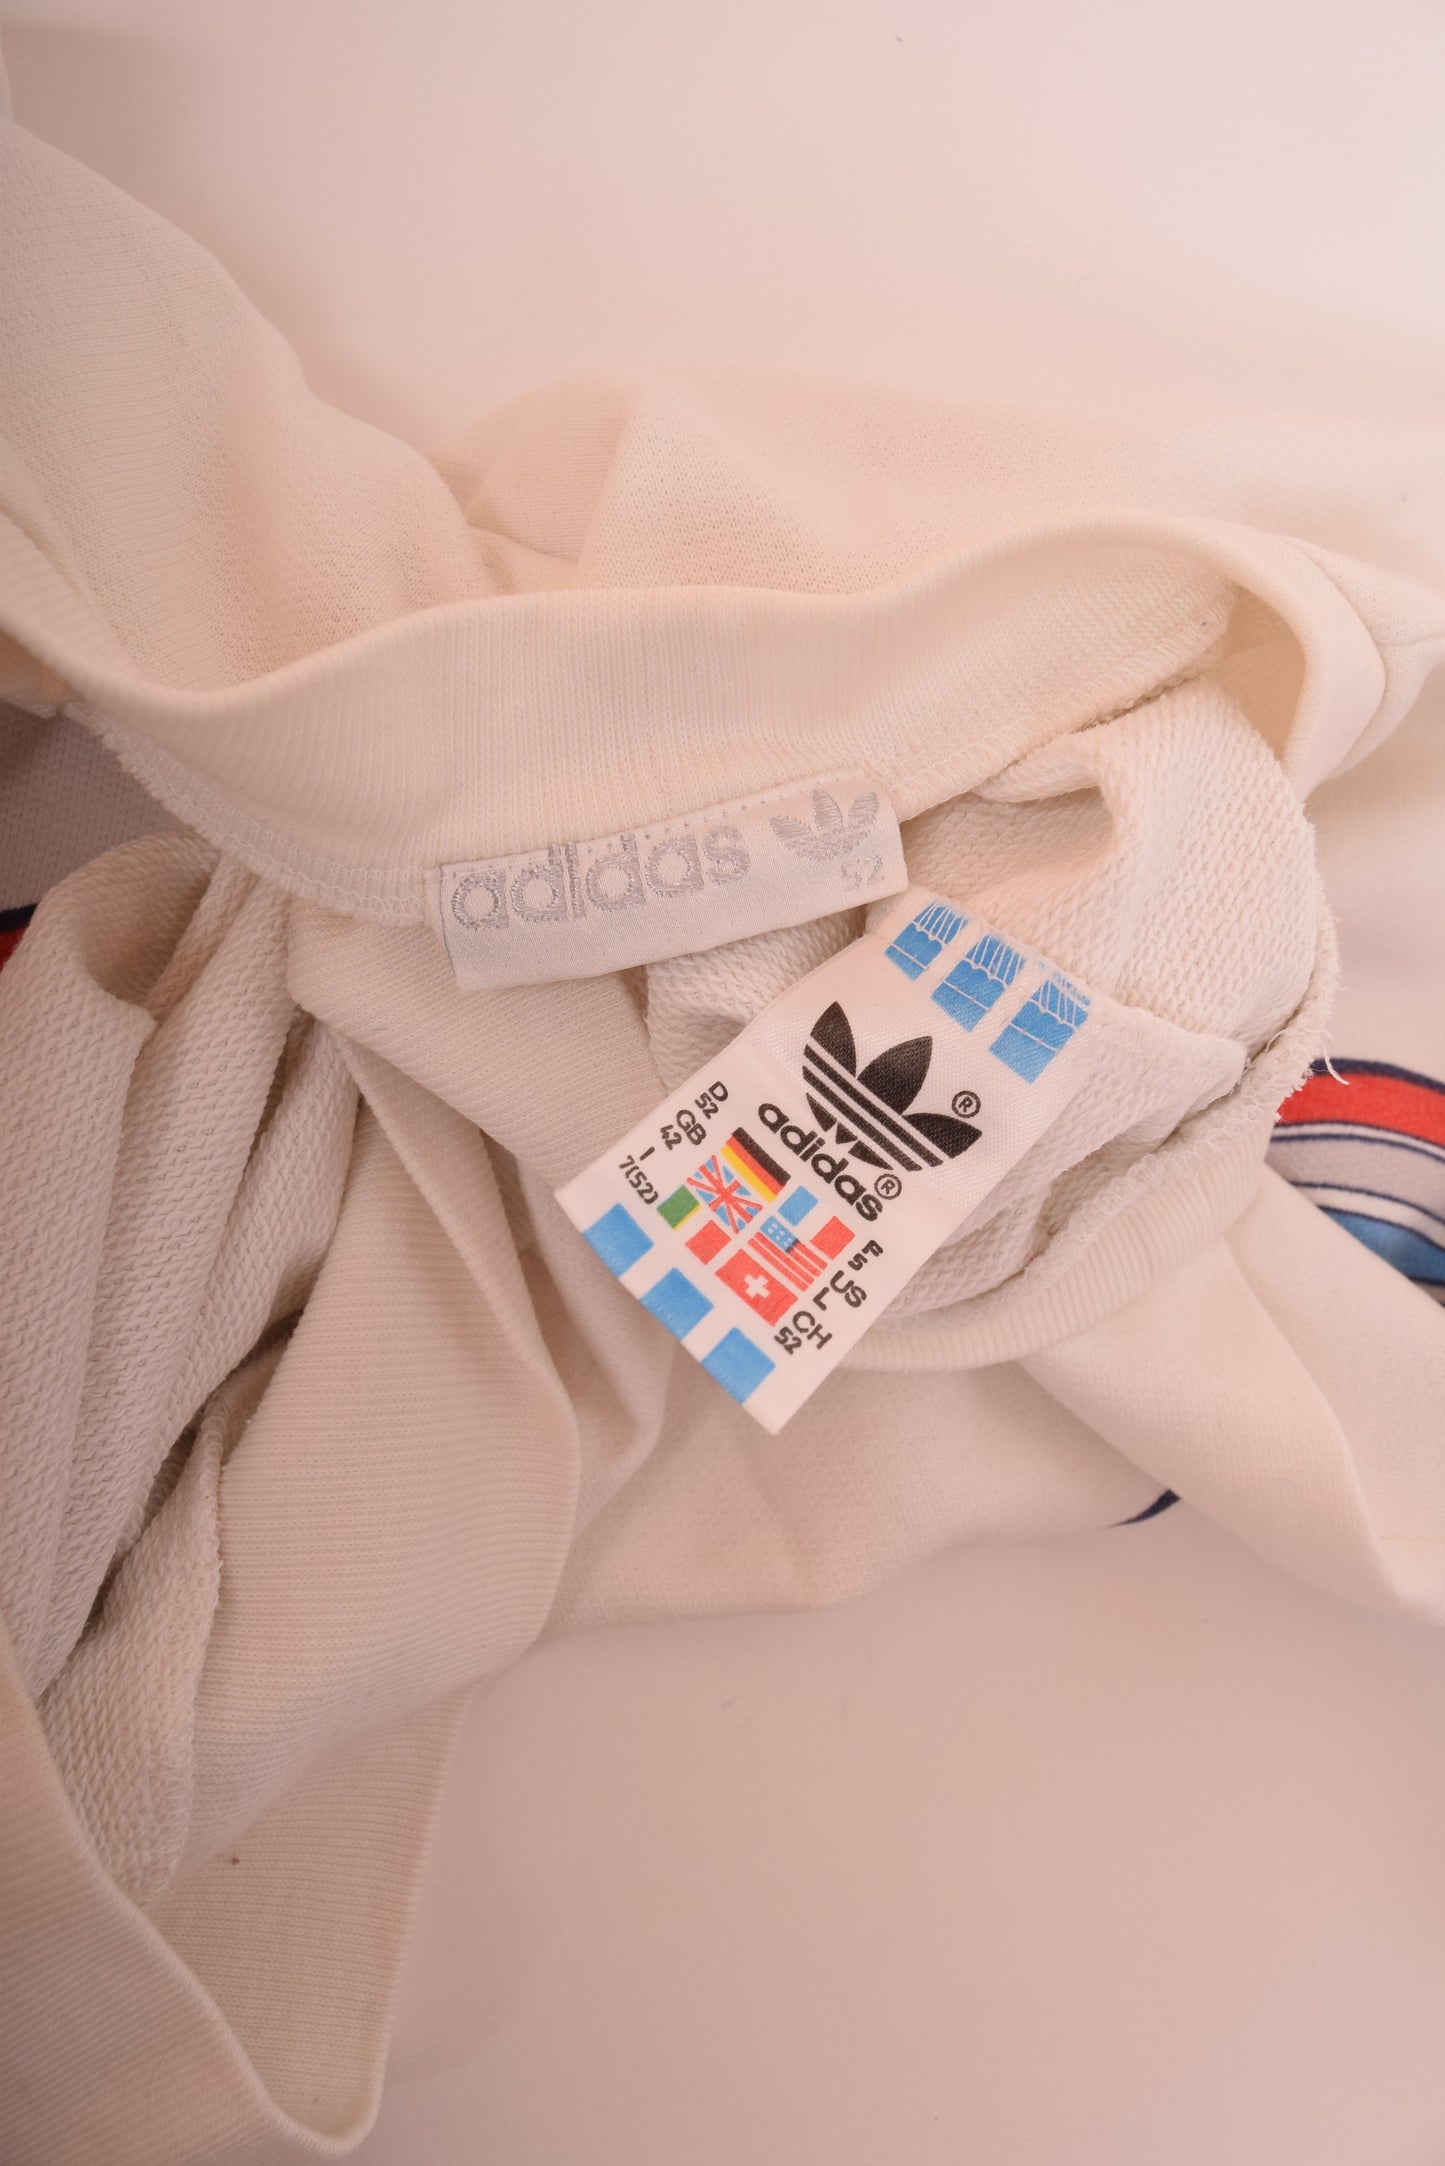 Vintage Adidas Ivan Lendl Tennis Sweatshirt Made in West Germany